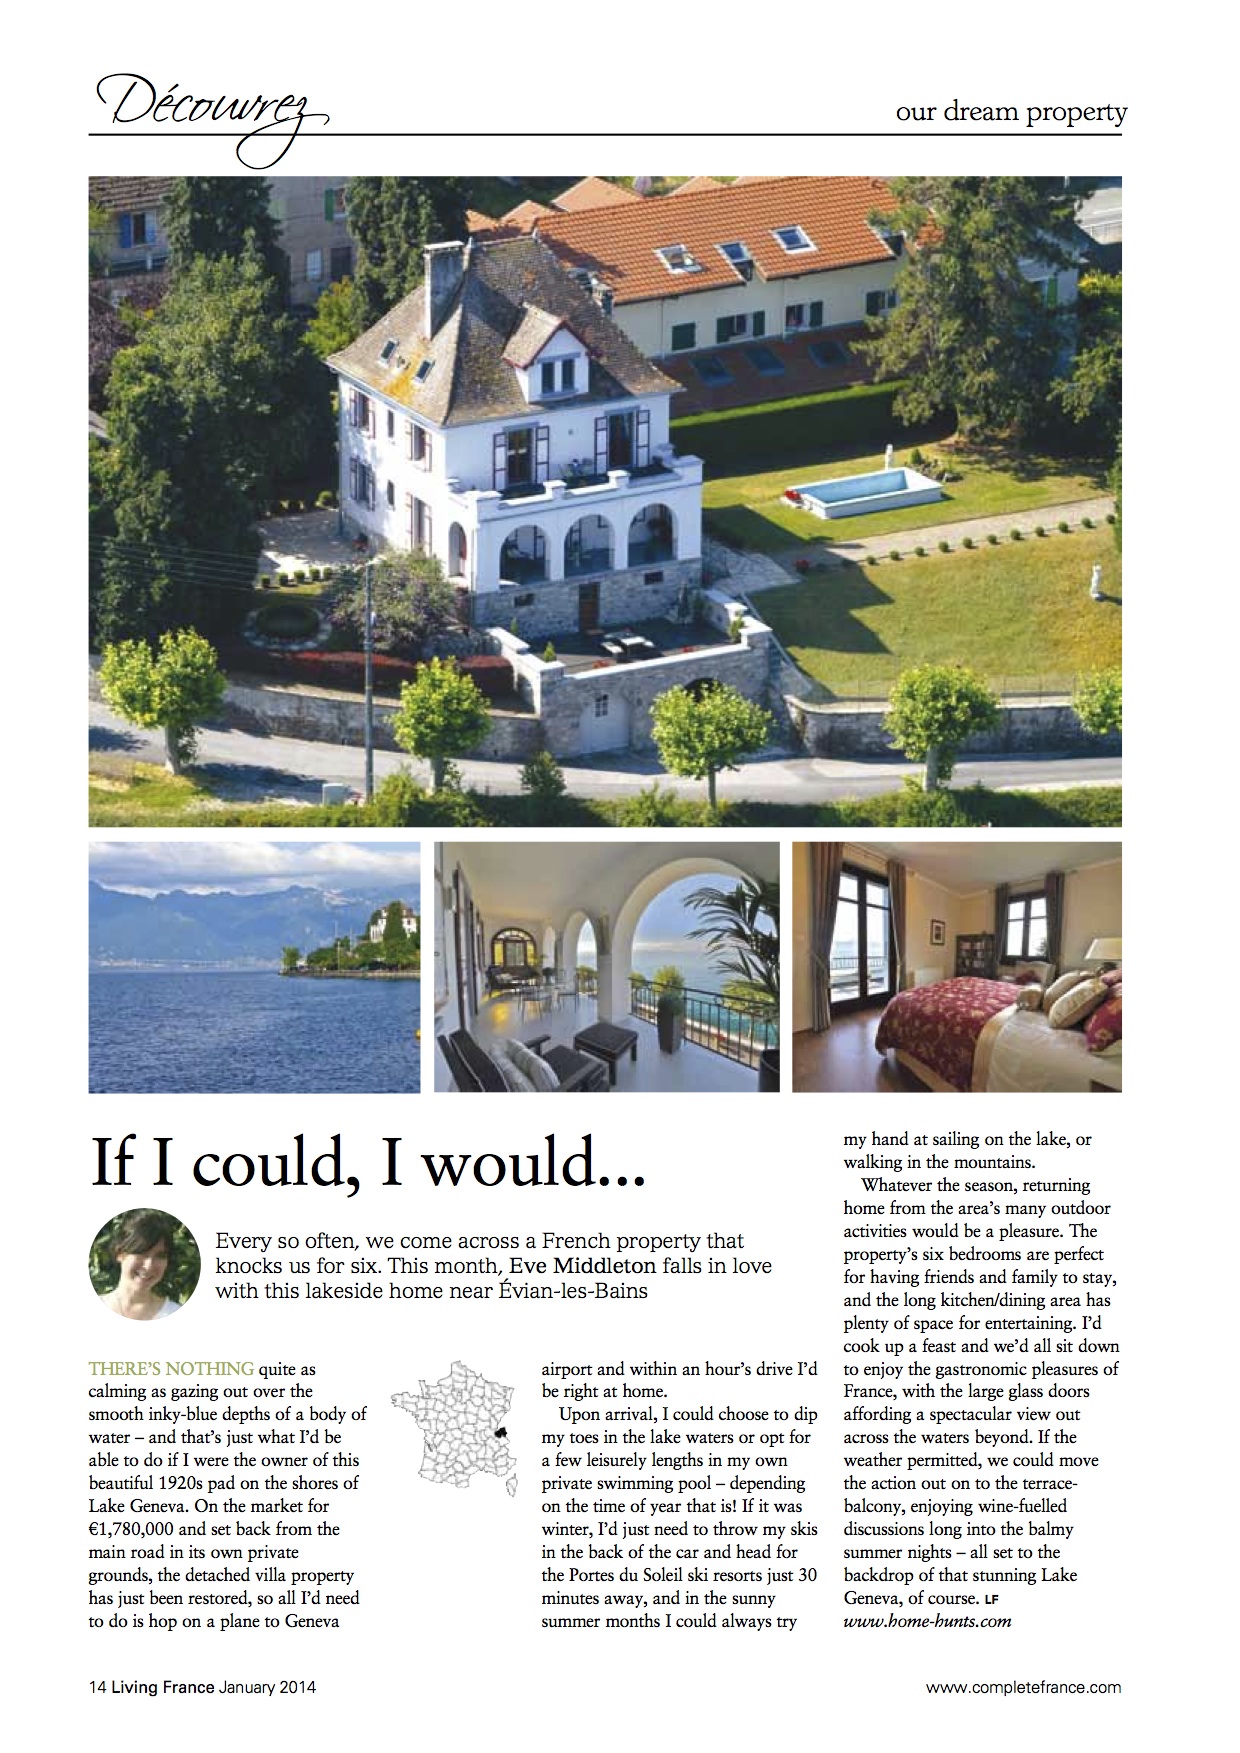 Living France Magazine – Lake Geneva Property